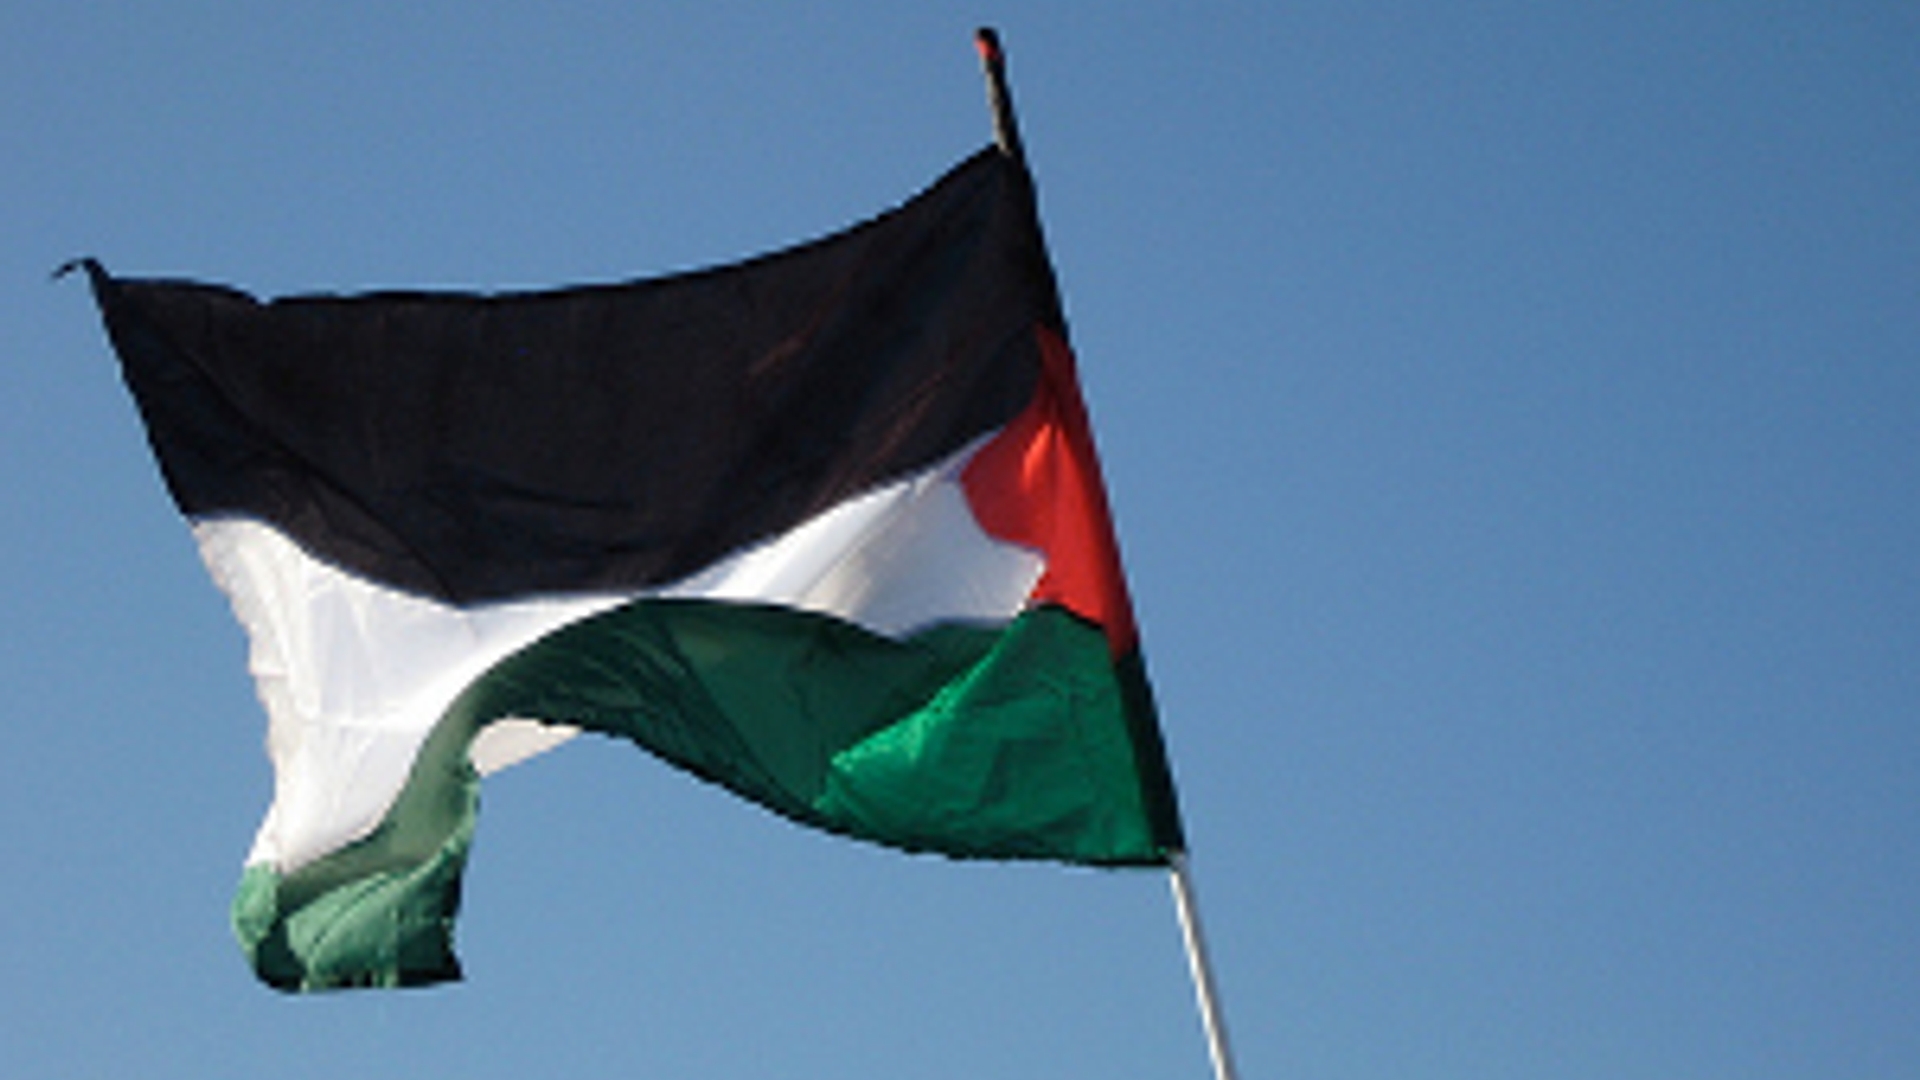 palestijnsevlag300.jpg